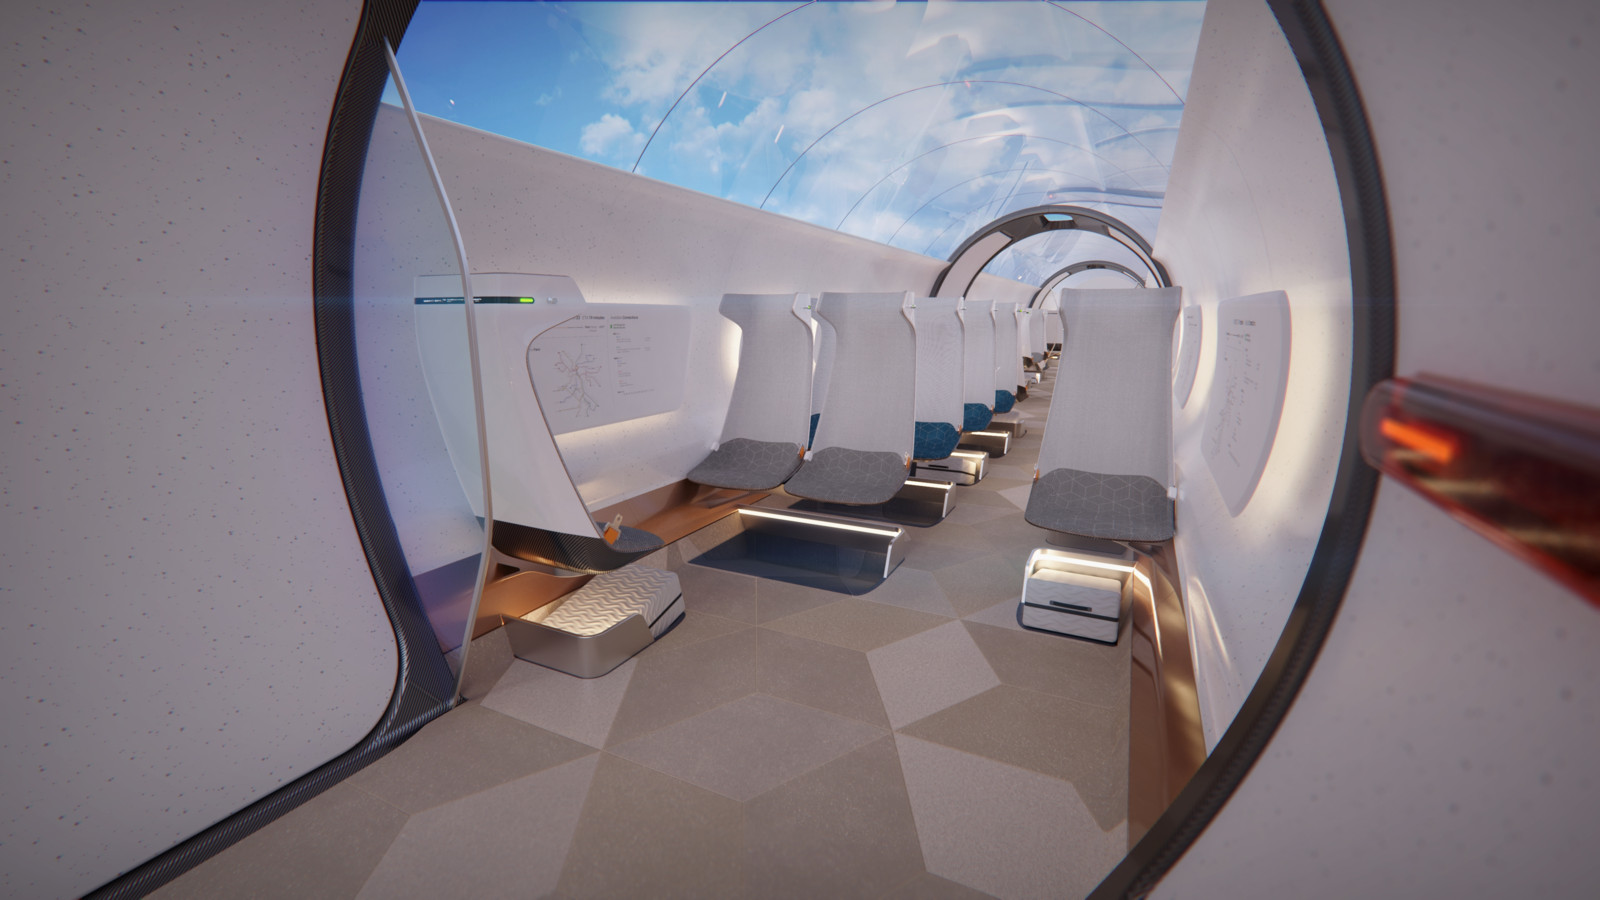 Der Hyperloop ist eine neue Form der Mobilität, die es ermöglicht, Menschen und Fracht in Kapseln schnell und bequem über lange Strecken zu transportieren. 